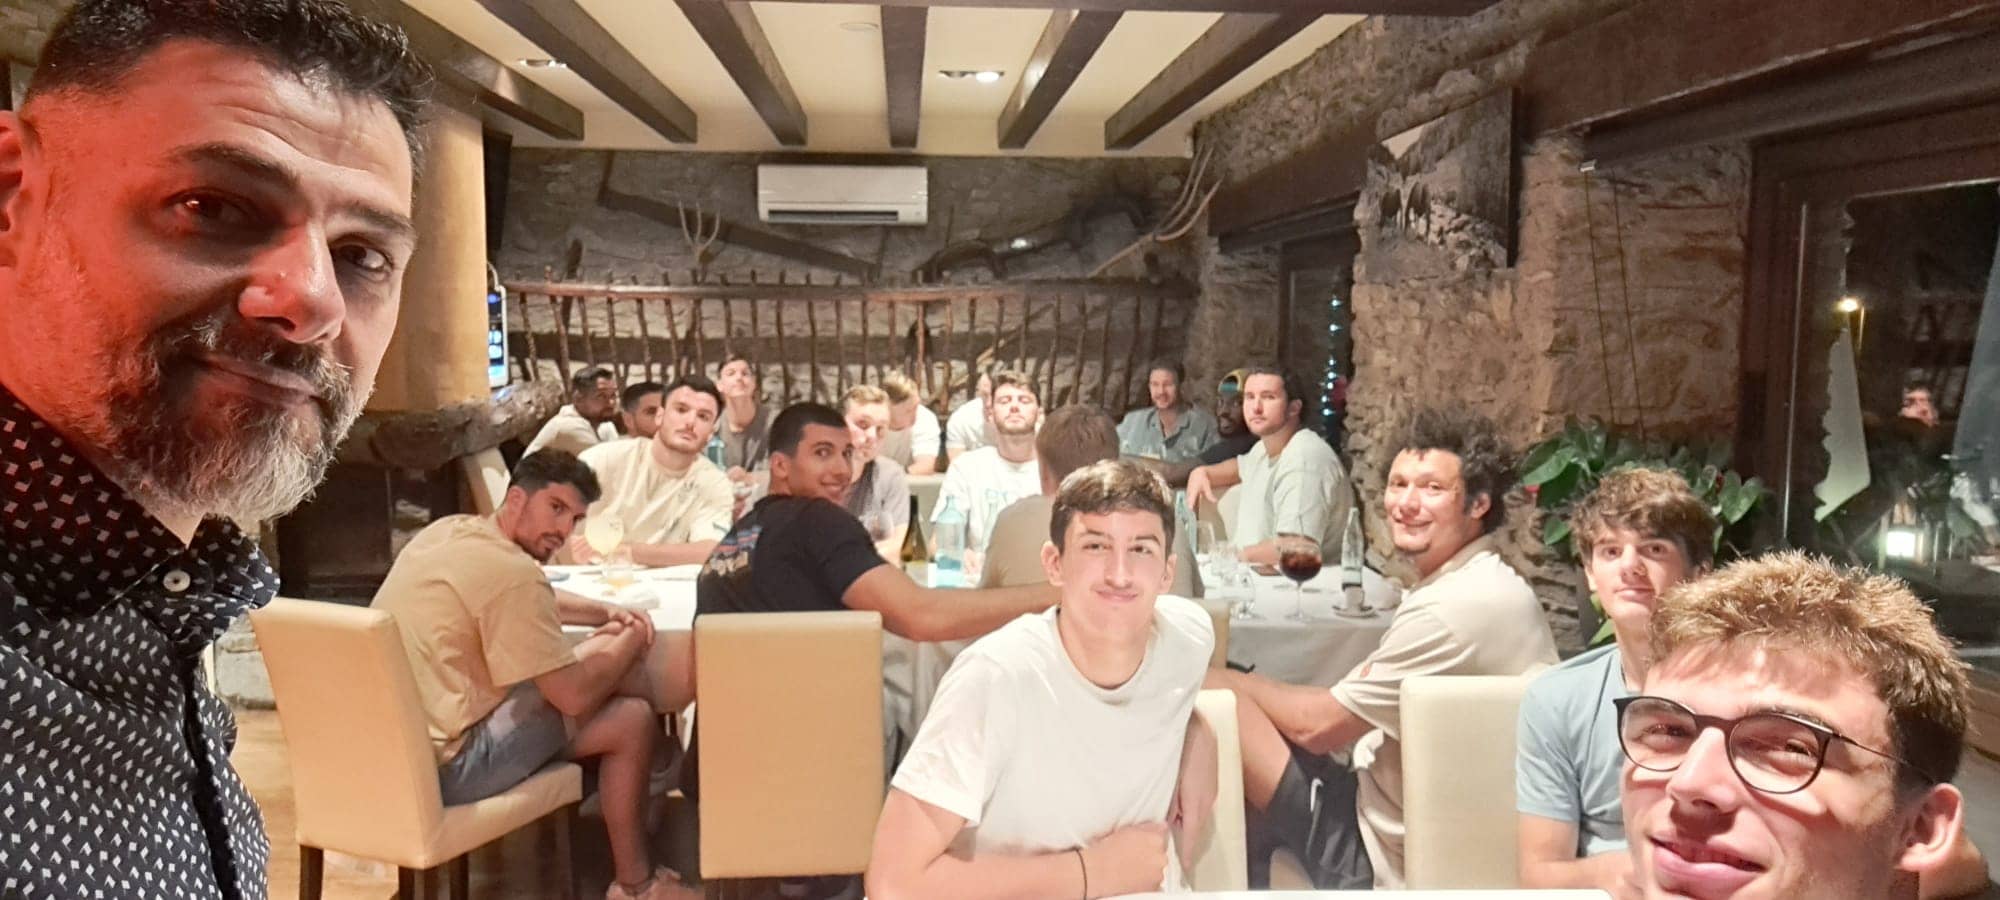 Moltes gràcies a tot l’equip d’Handbol del Barça per les magnífiques fotos. Avui dimecres dia 9 d’agost tot l’equip d’Handbol del Barça ha anat a sopar al Restaurant BORDA XIXERELLA. Moltes gràcies per la vostra visita i per tornar un any més.